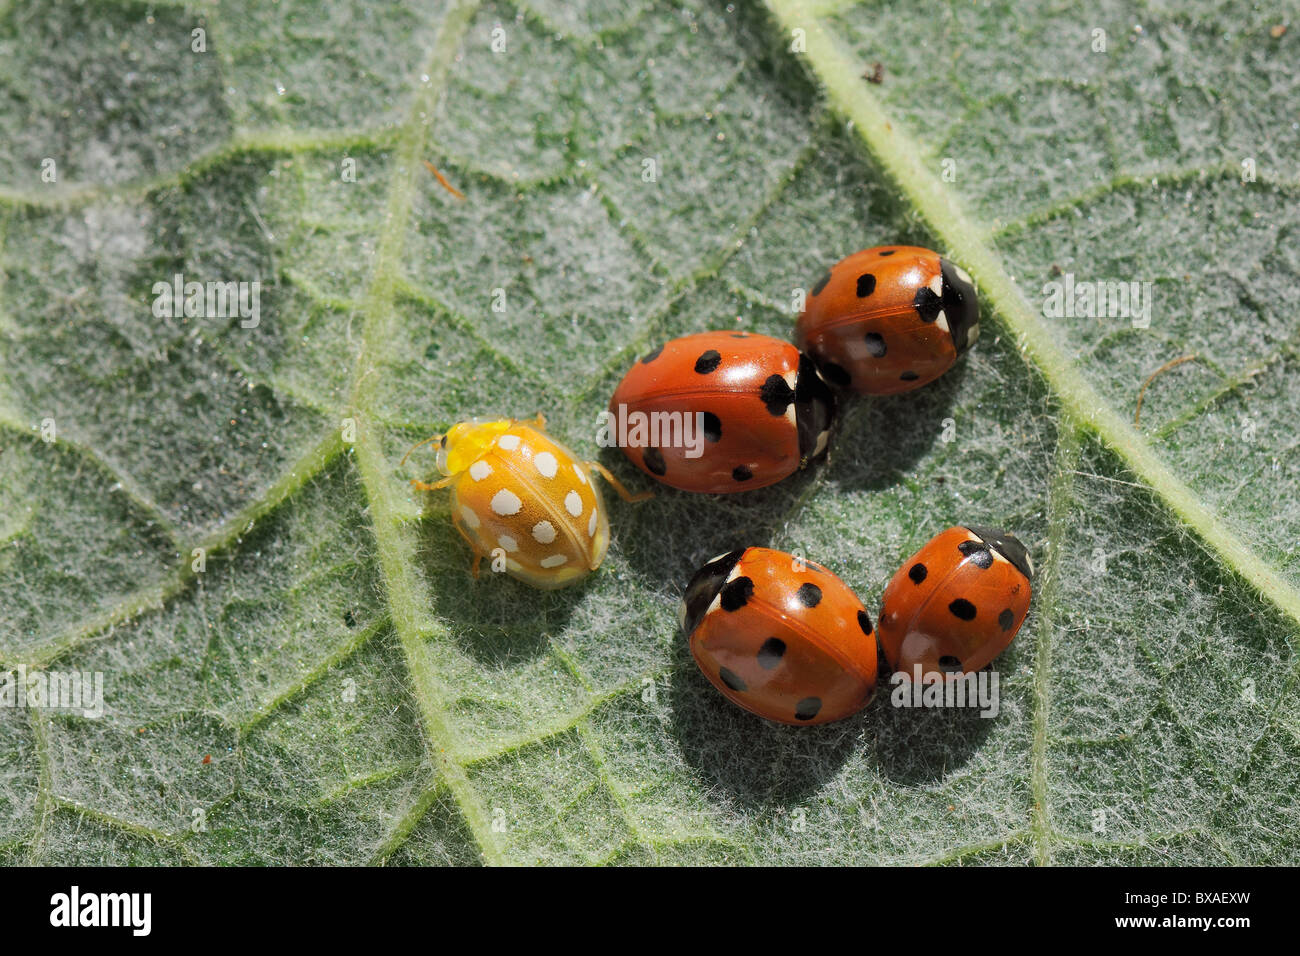 Une Orange 16 ladybird (Halyzia sedecimguttata spot) s'éloigne d'un groupe de rouge en hibernation 7 coccinelles sur place. Banque D'Images